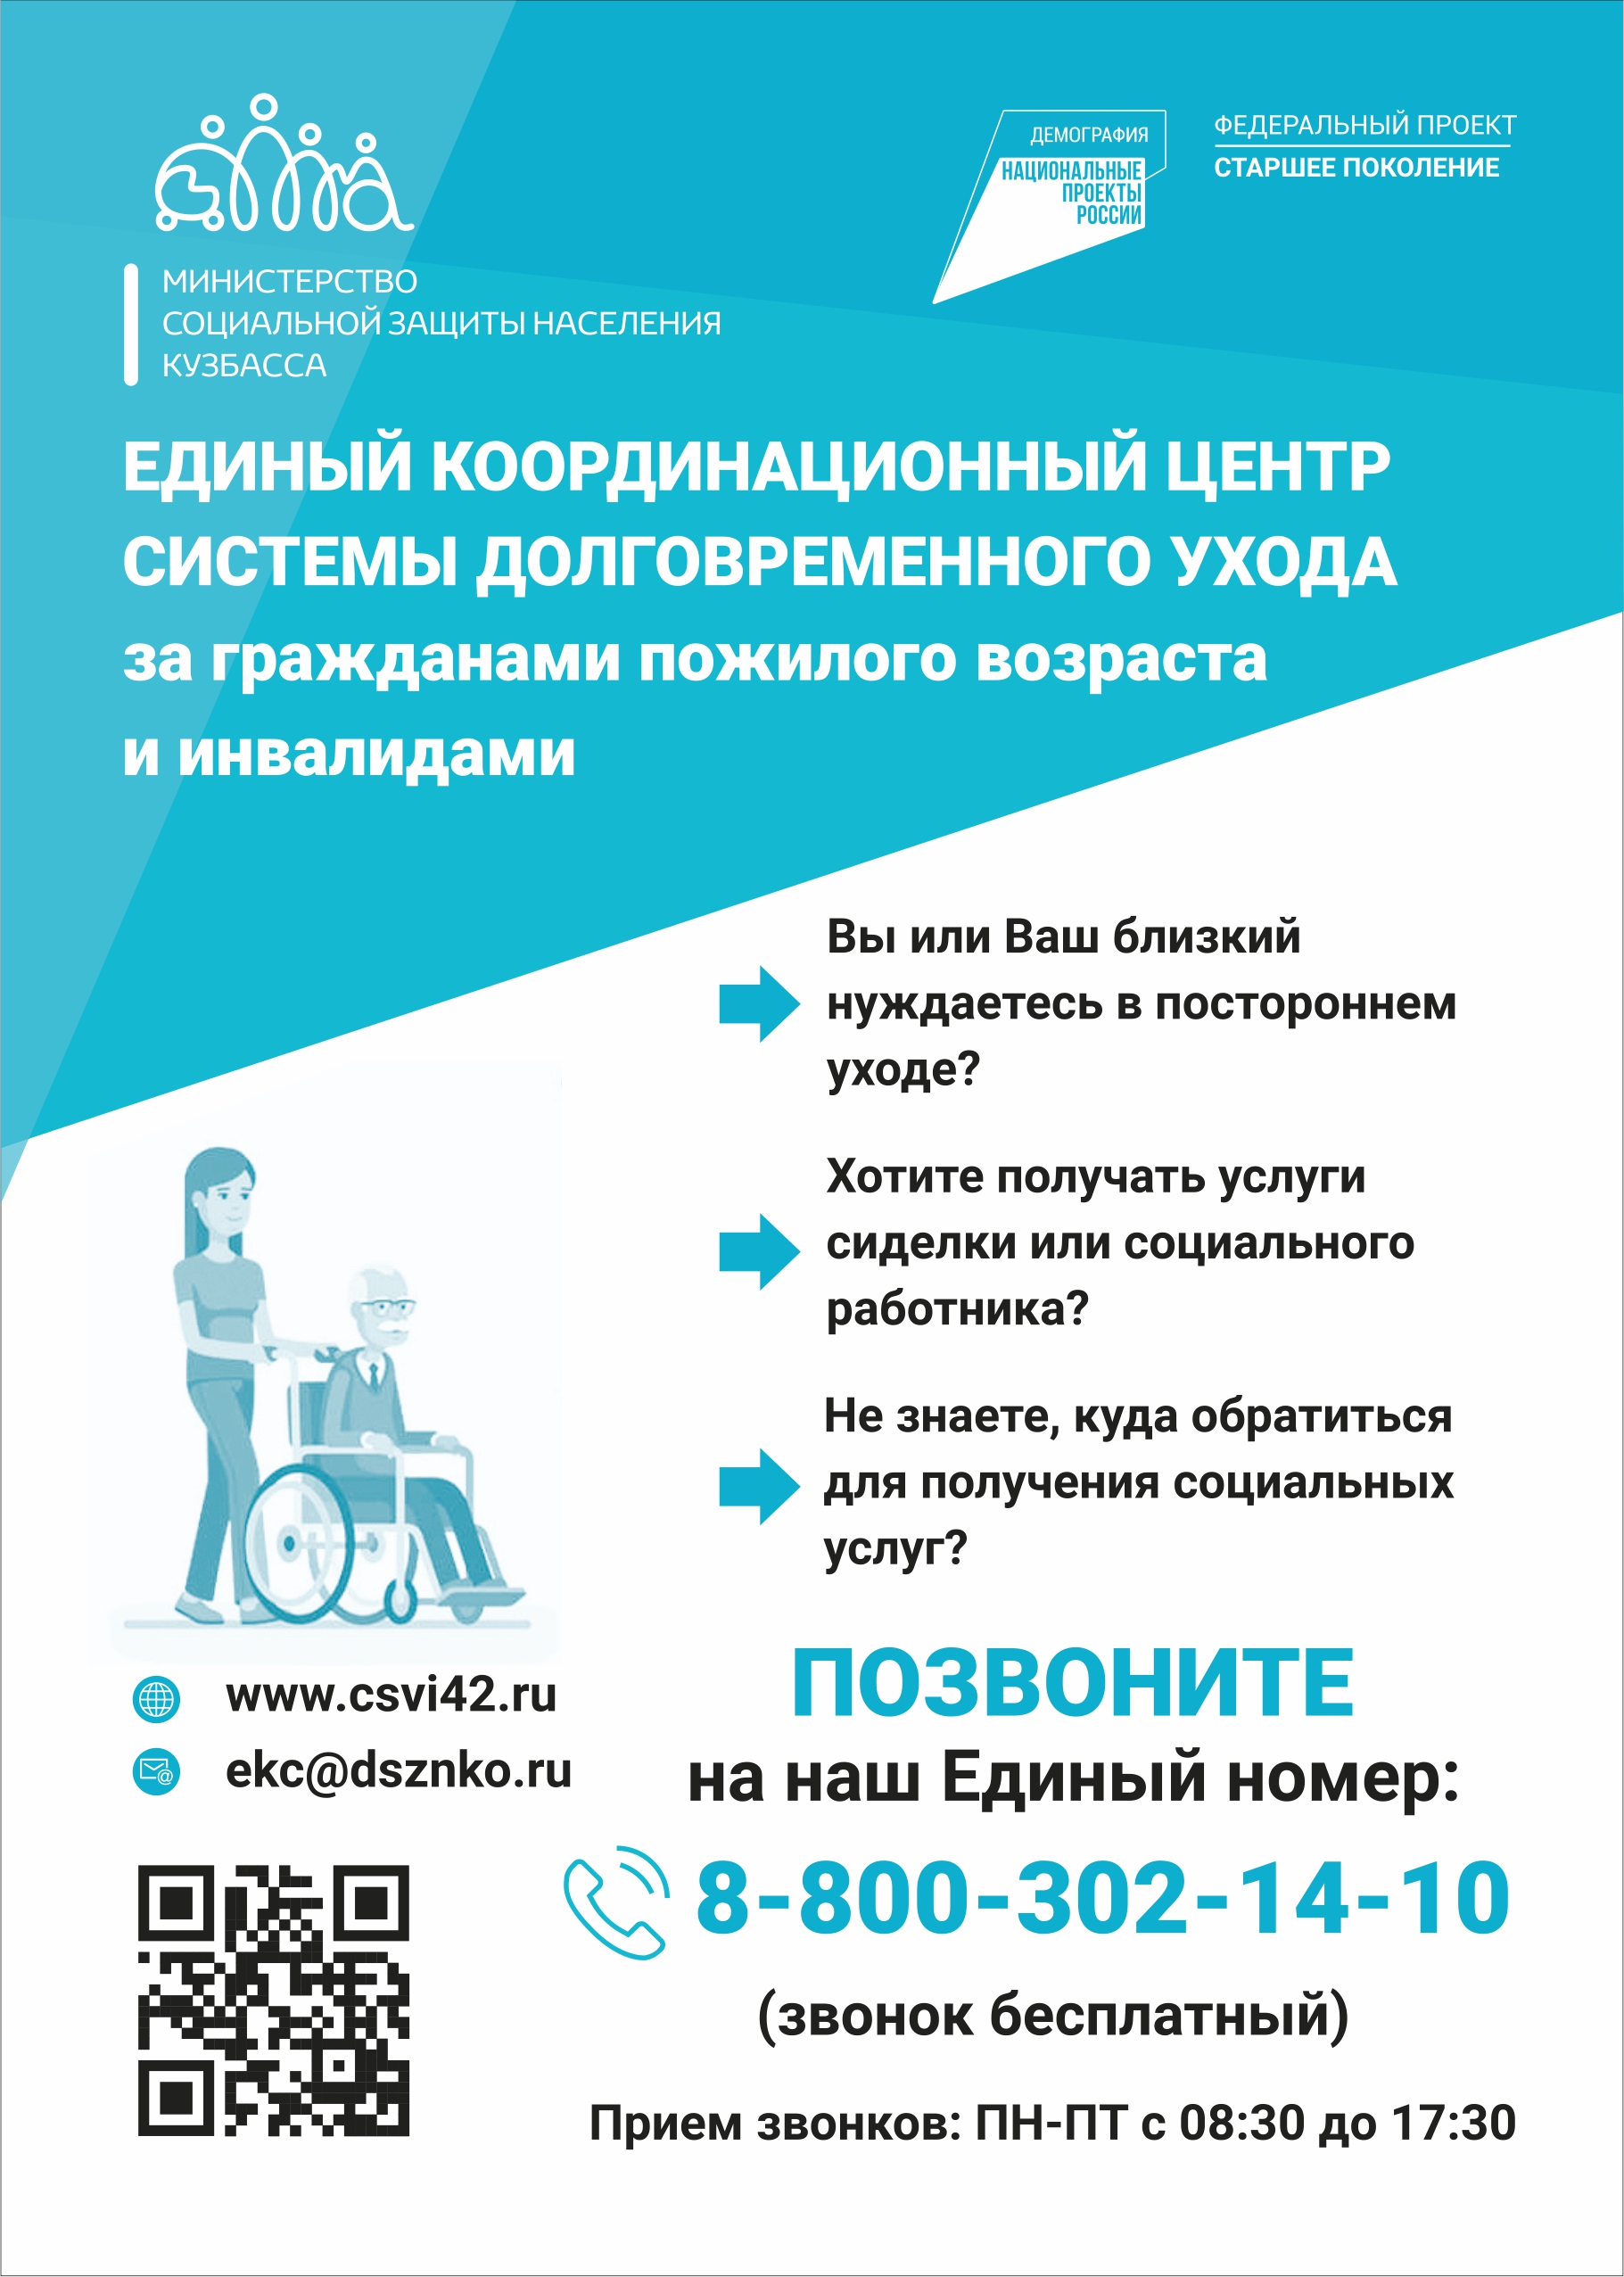 единый координационный центр за гражданами пожилого возраста и инвалидами